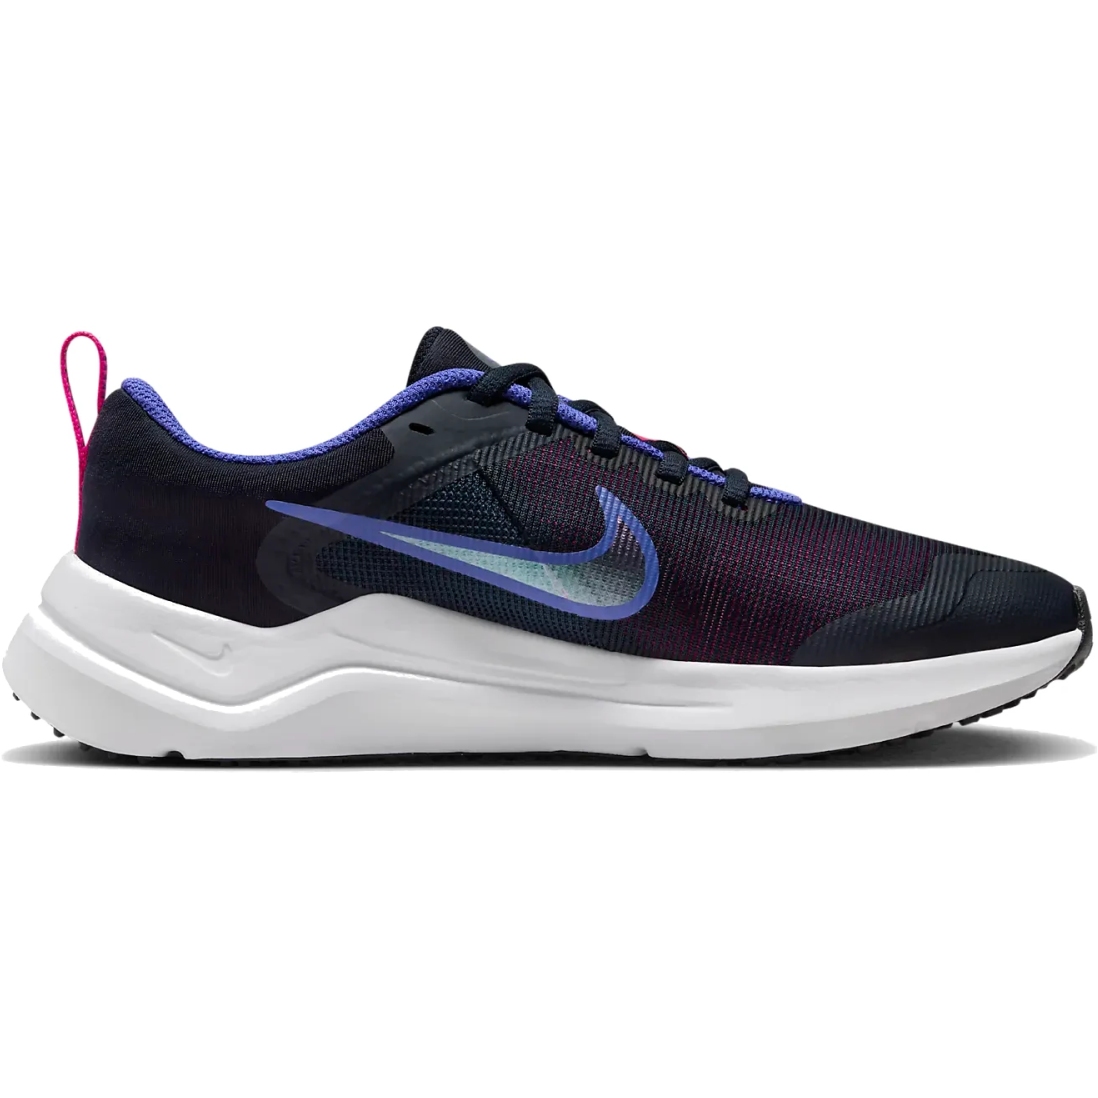 Immagine prodotto da Nike Scarpe Running Bambini - Downshifter 12 - dark obsidian/fierce pink/light ultramarine/white DM4194-401